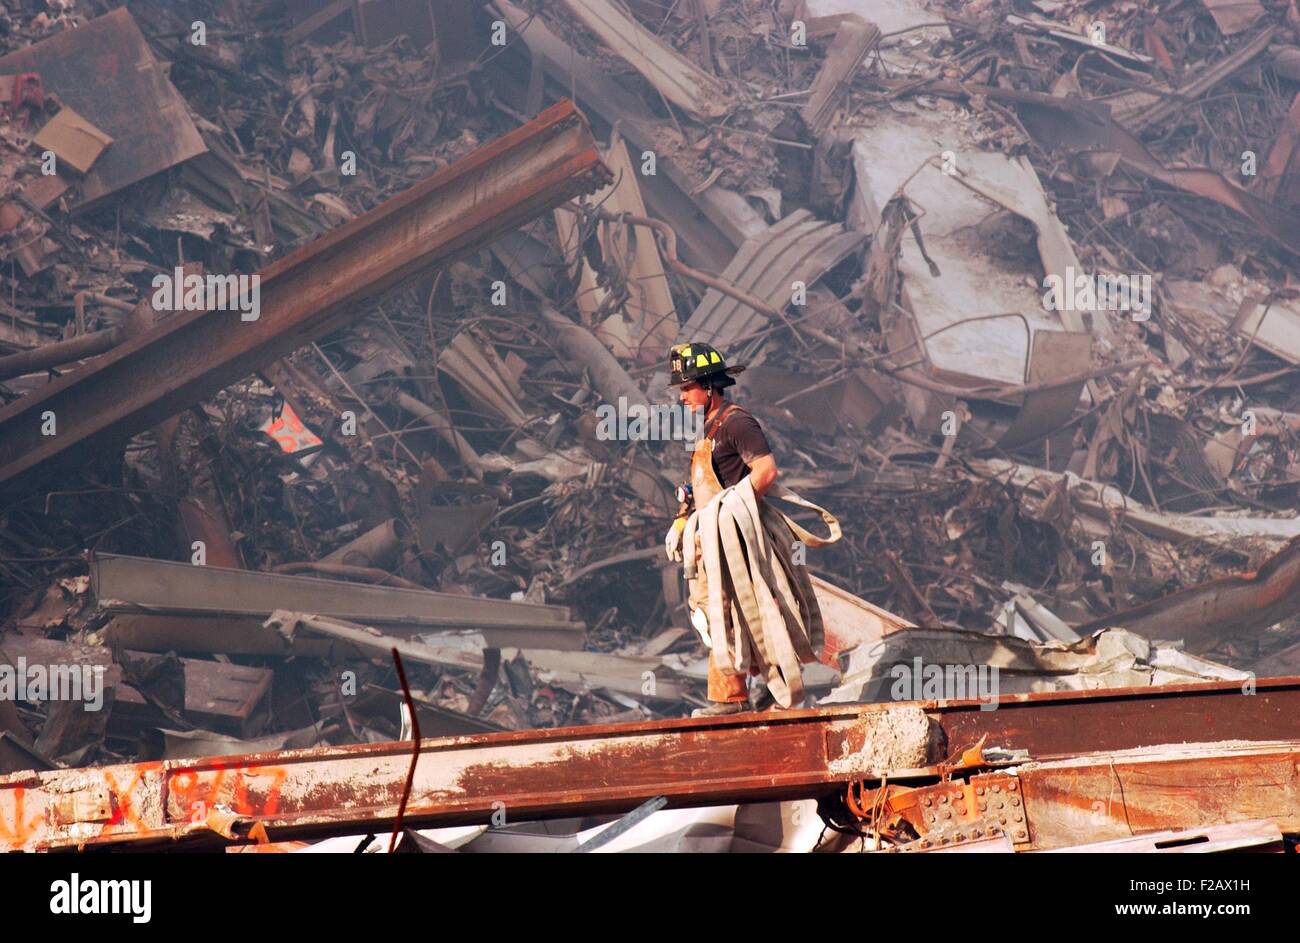 NYC Fire fighter porta un tubo antincendio su incendi a combustione lenta e rottami a Ground Zero, Sett. 18, 2001. World Trade Center di New York City, dopo l'11 settembre 2001 attacchi terroristici. (BSLOC 2015 2 97) Foto Stock